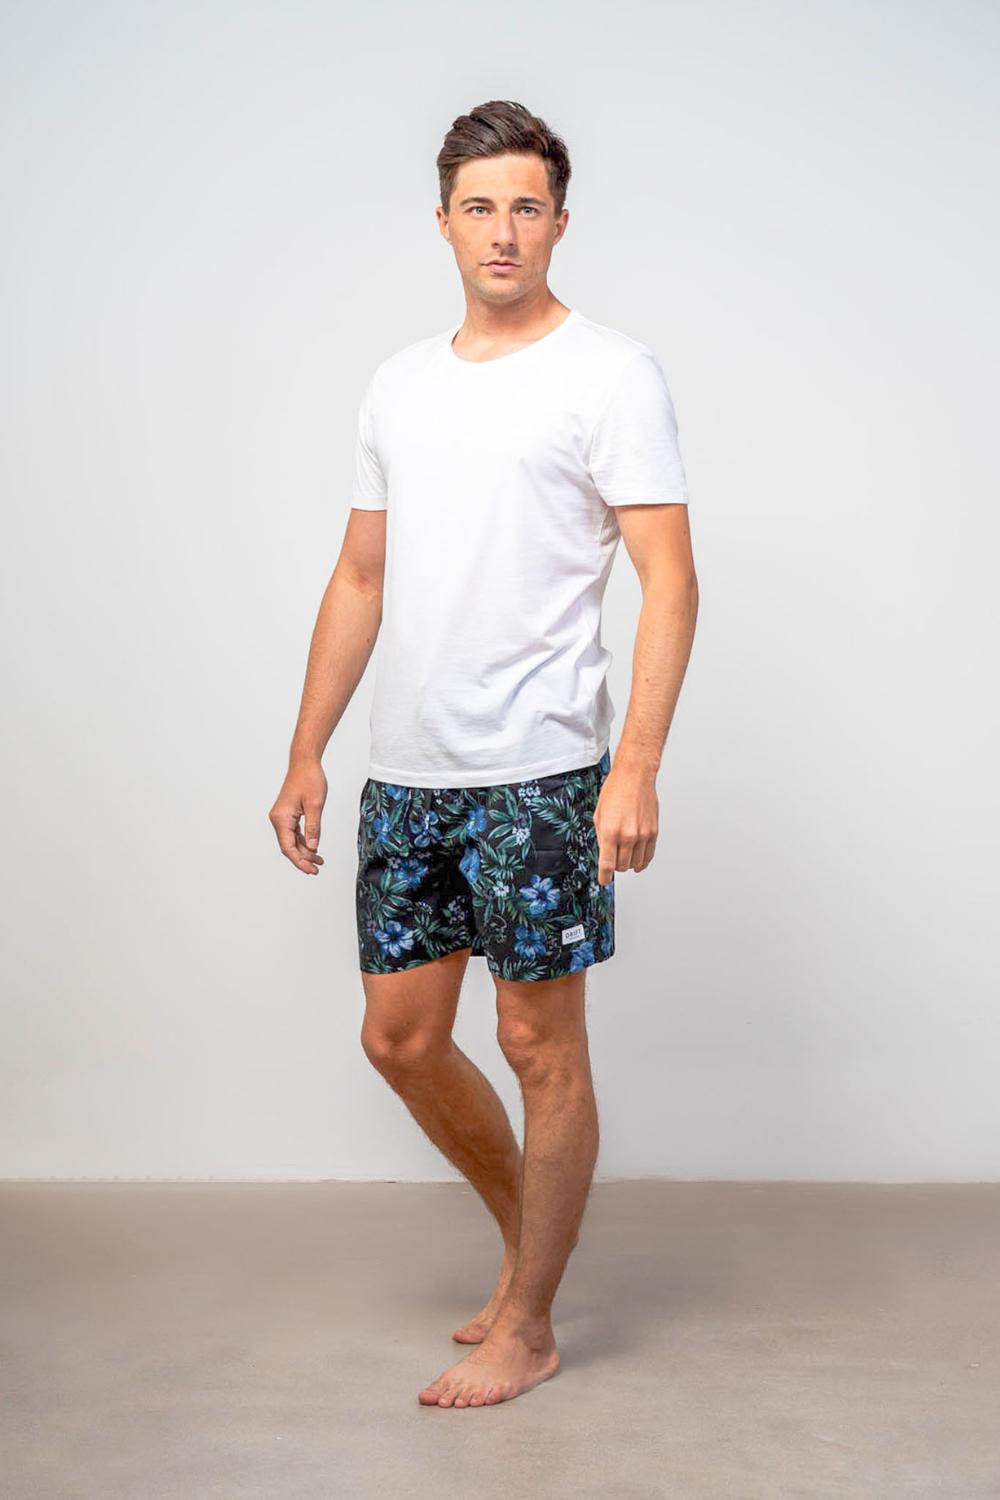 Mens Loungewear PJ Shorts Sets  Cotton Nightwear For Men – Drift Sleepwear